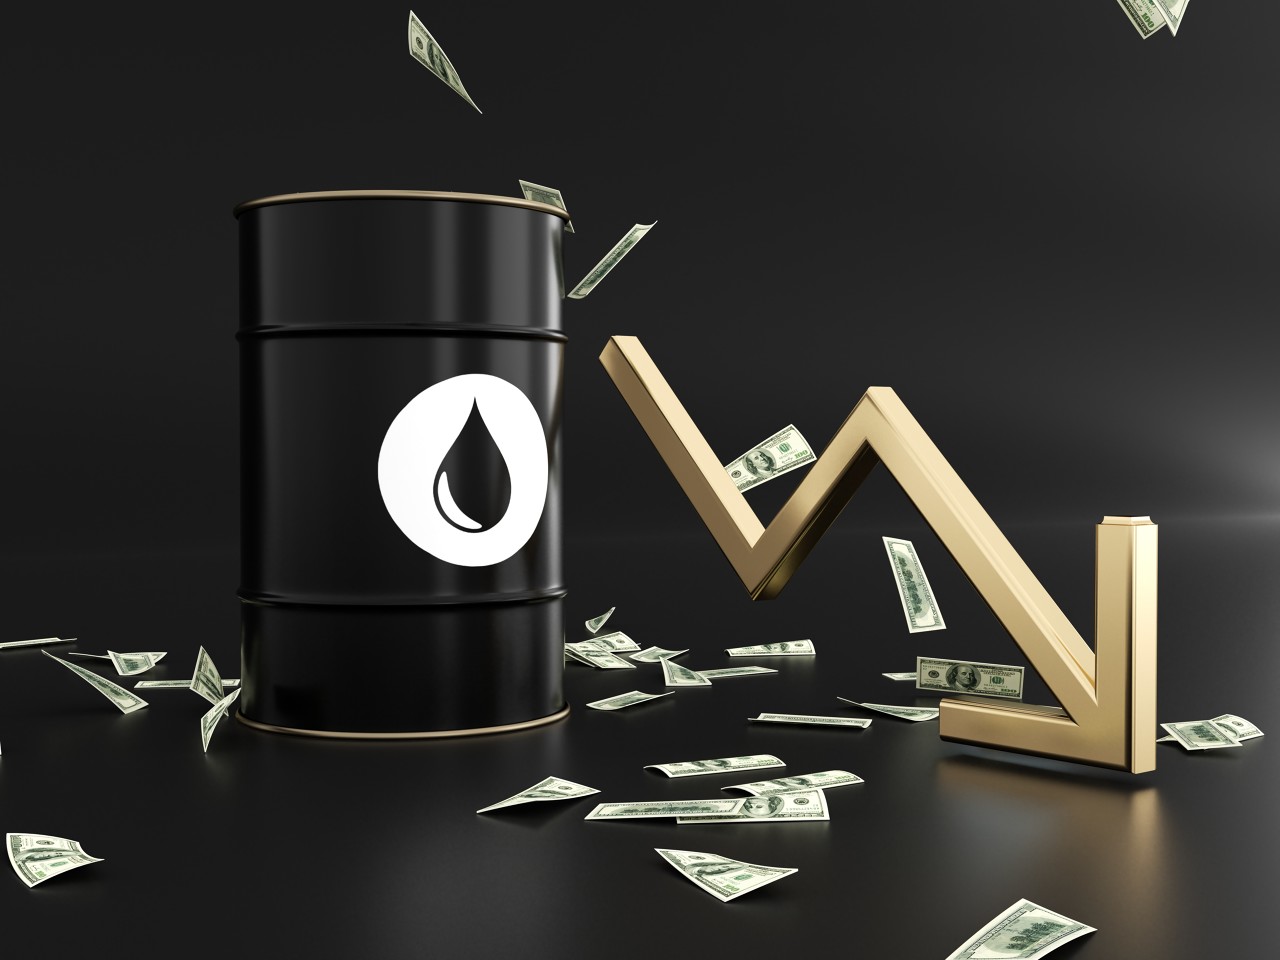 全球释放石油总量达到2.4亿桶 WTI原油跌破100美元关口